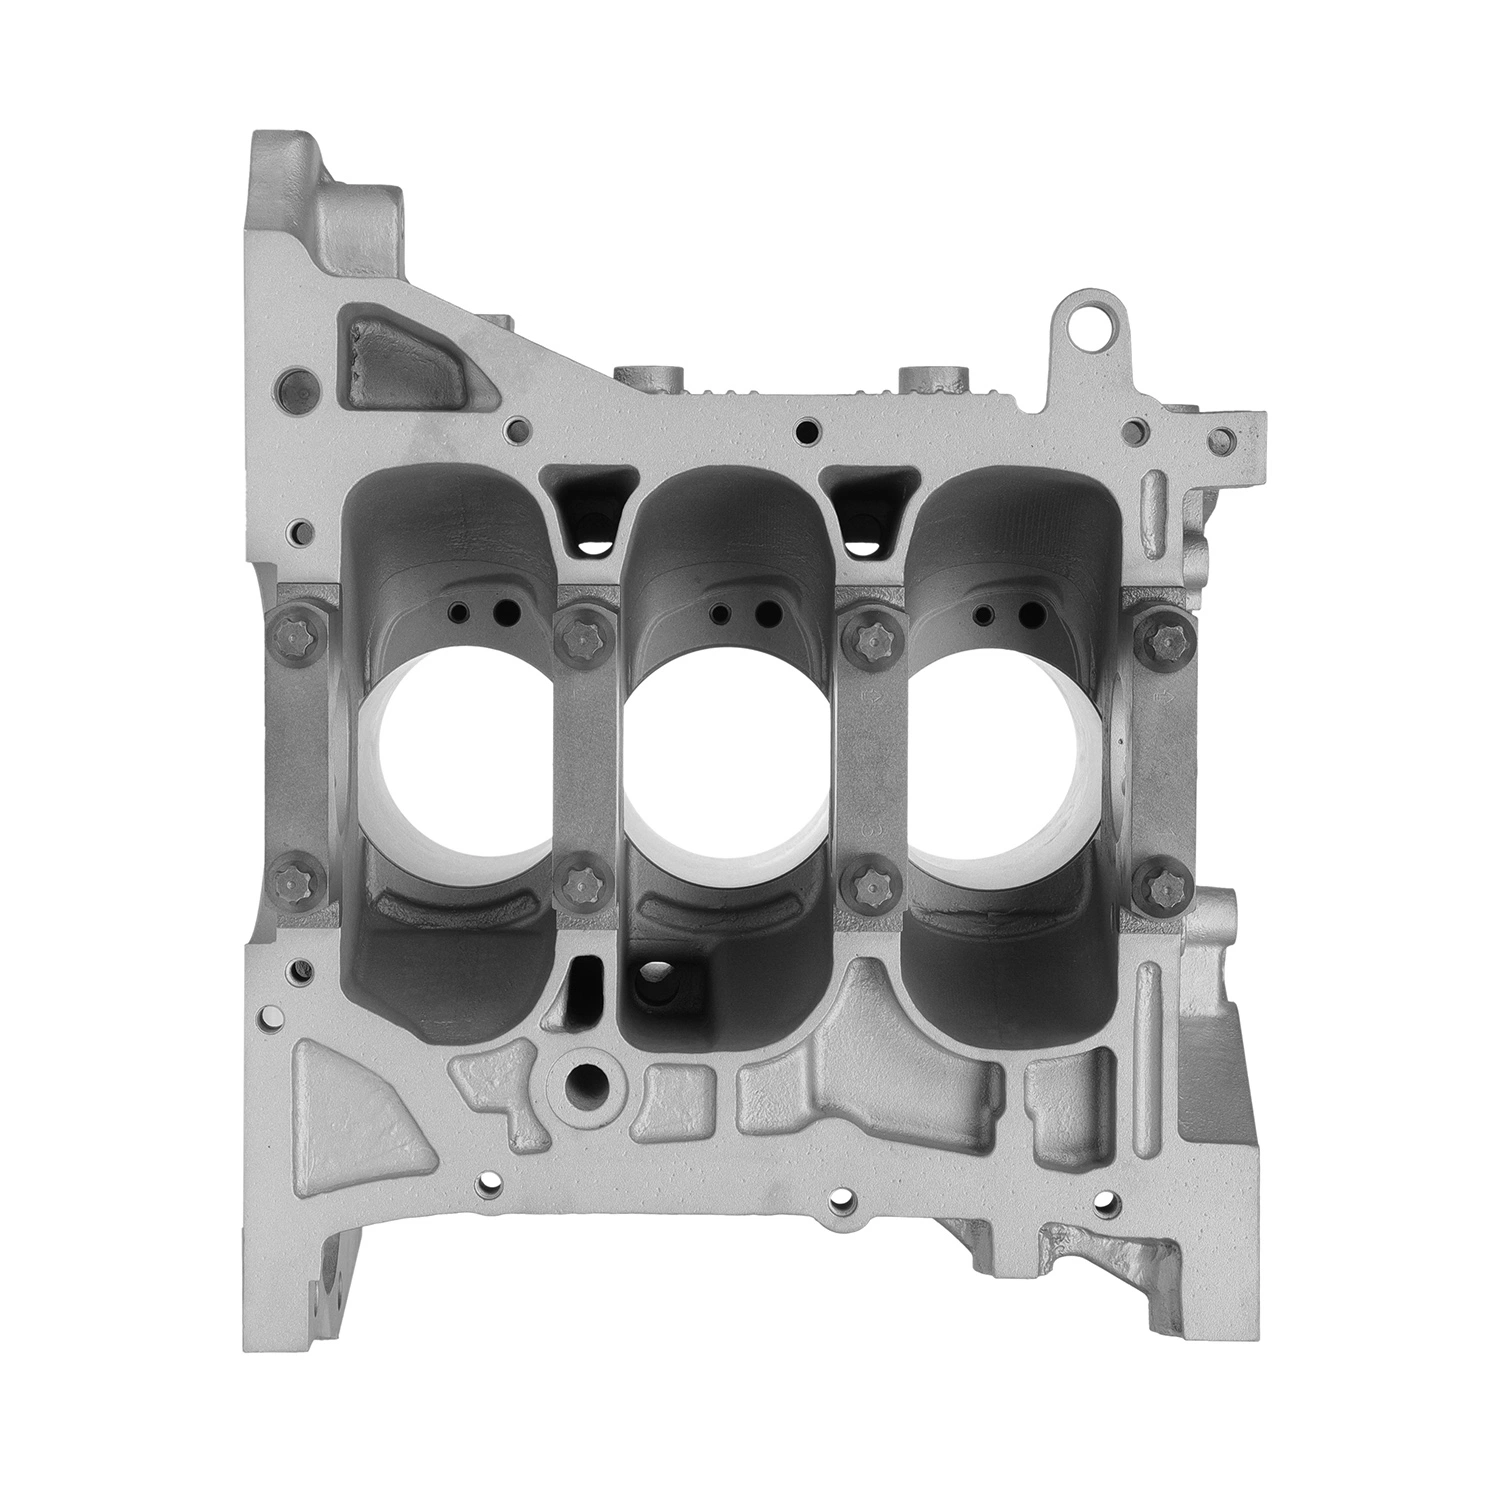 Industrial de arena de impresión 3D personalizadas OEM moldeado en arena de fundición de aluminio maquinaria Repuestos parte por el prototipado rápido y de mecanizado CNC